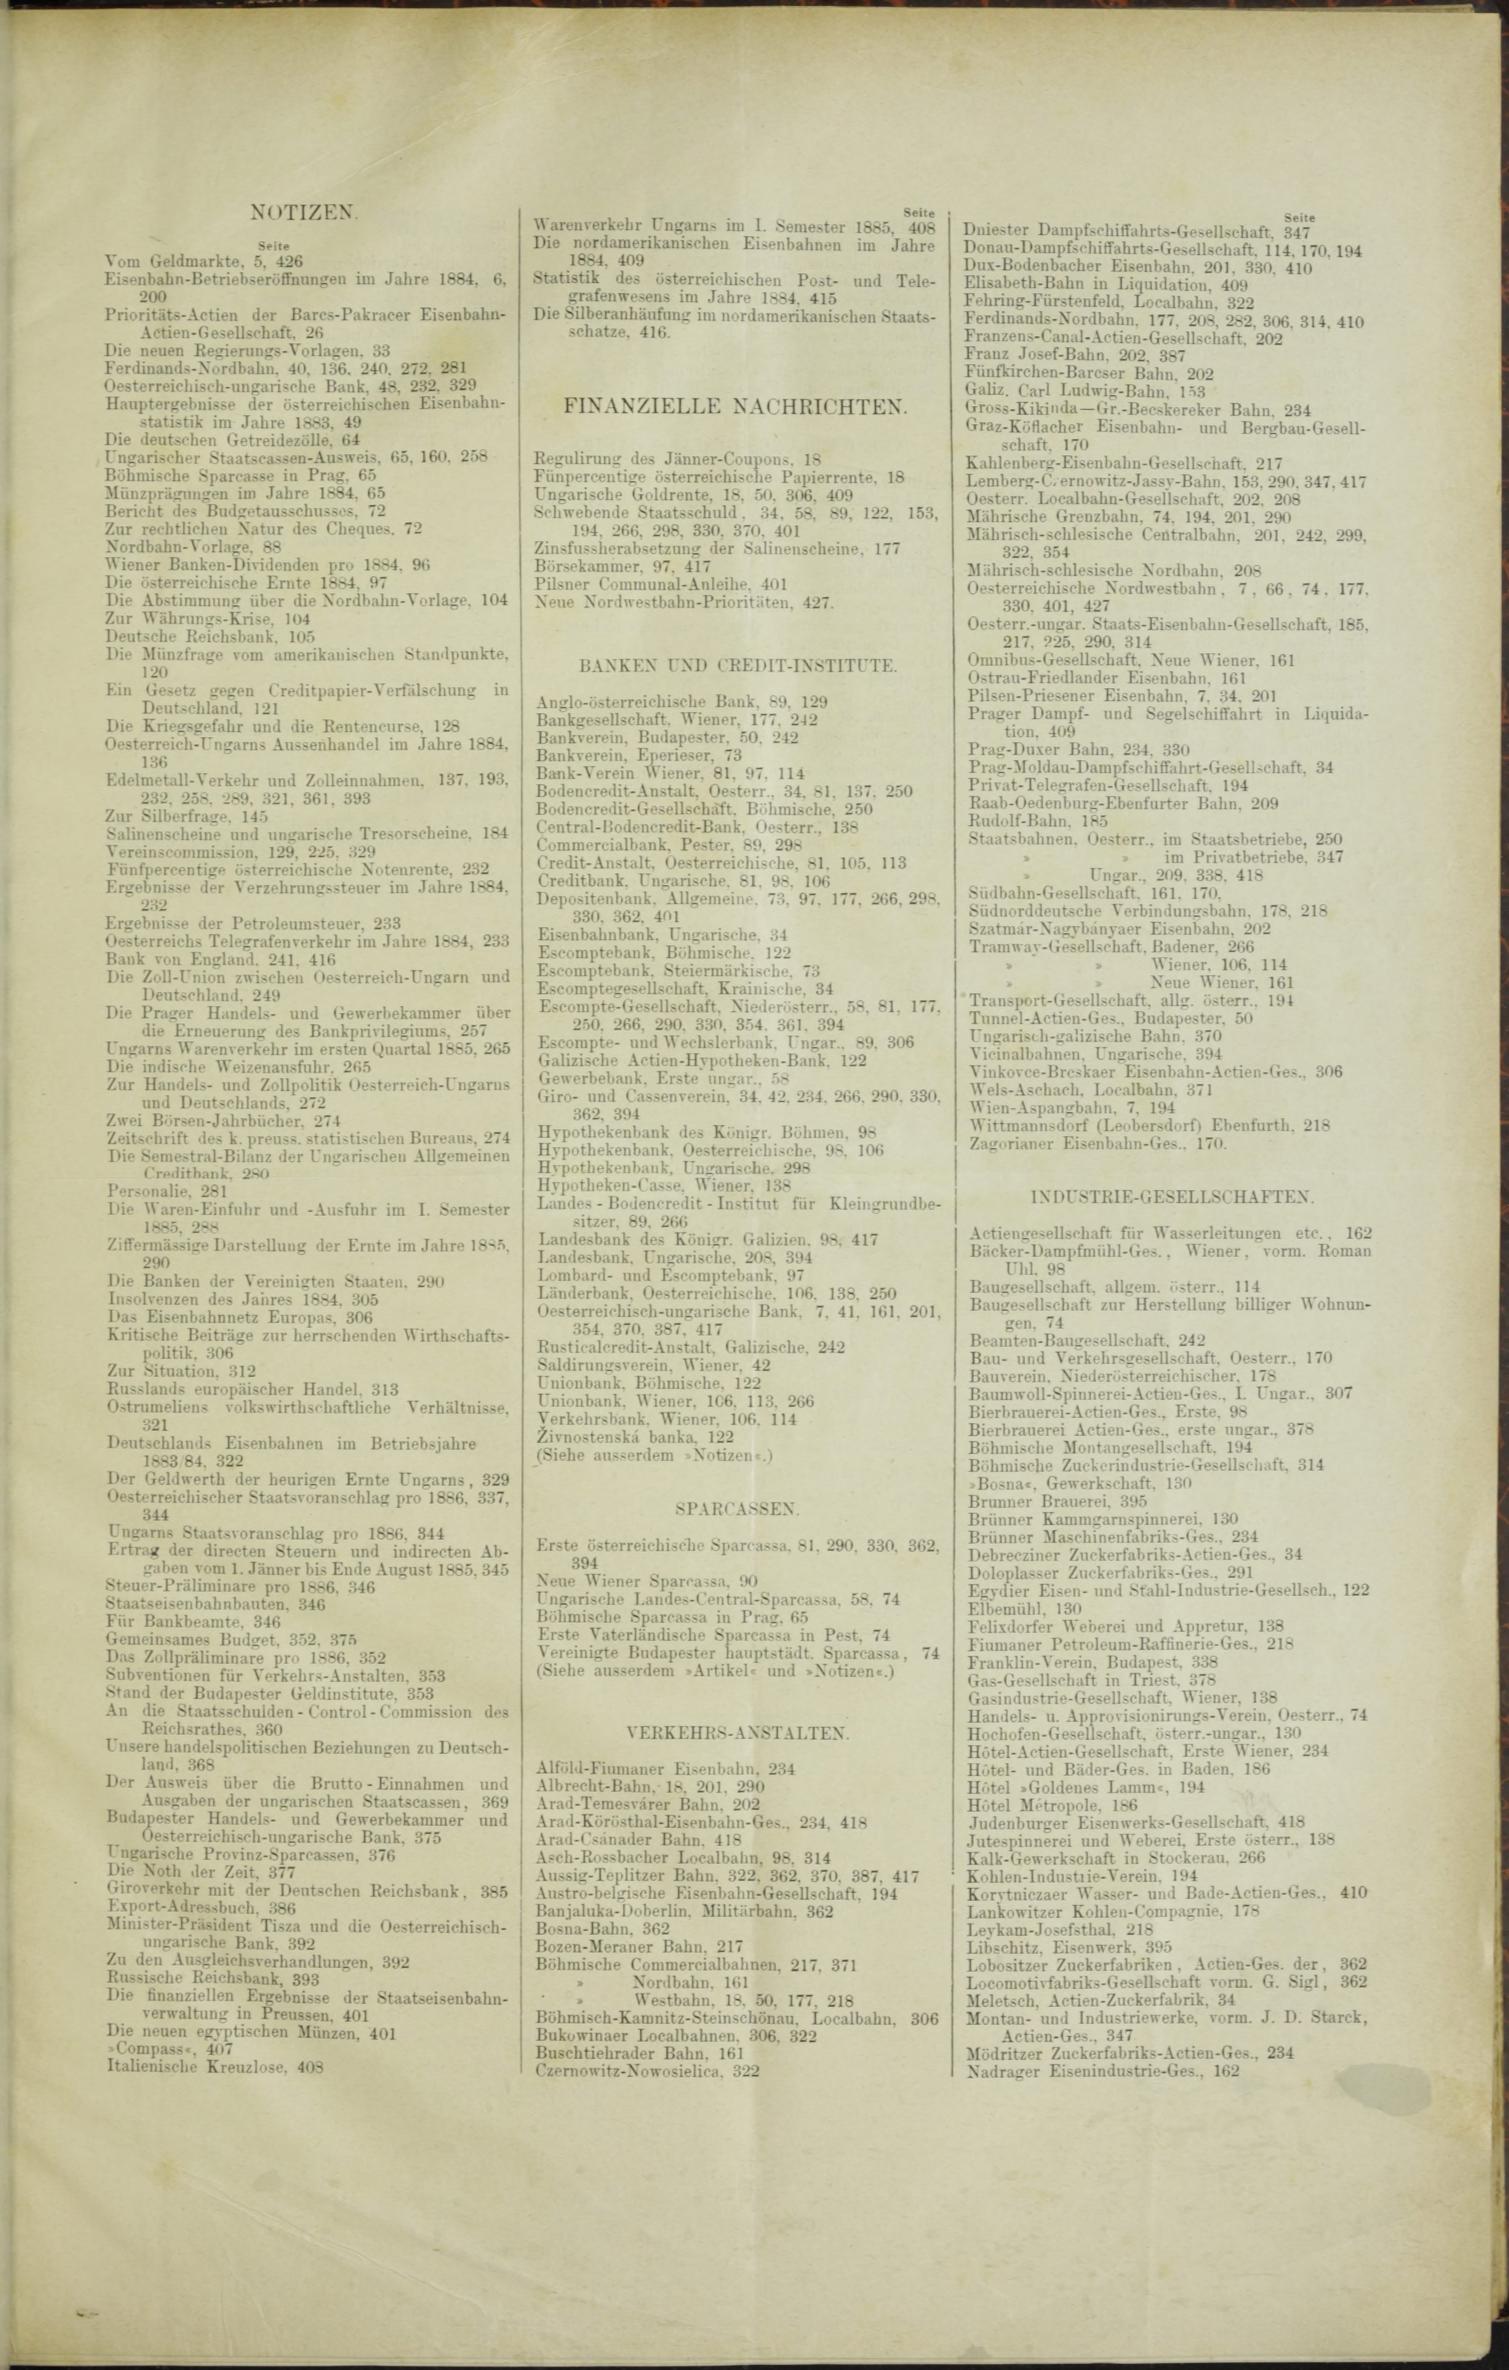 Der Tresor 17.09.1885 - Seite 9